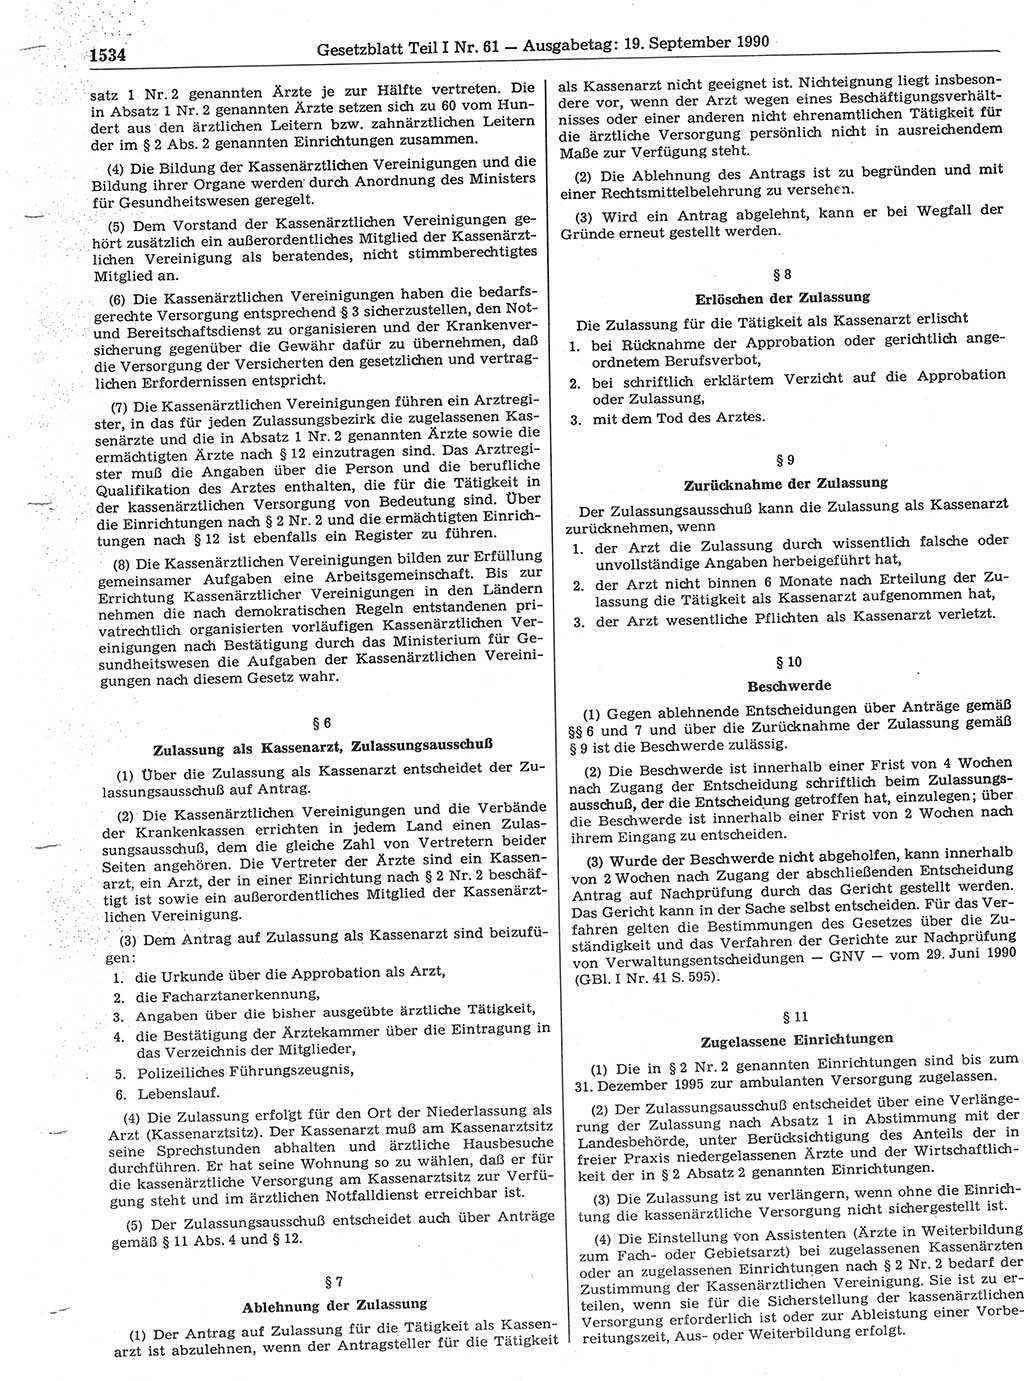 Gesetzblatt (GBl.) der Deutschen Demokratischen Republik (DDR) Teil Ⅰ 1990, Seite 1534 (GBl. DDR Ⅰ 1990, S. 1534)